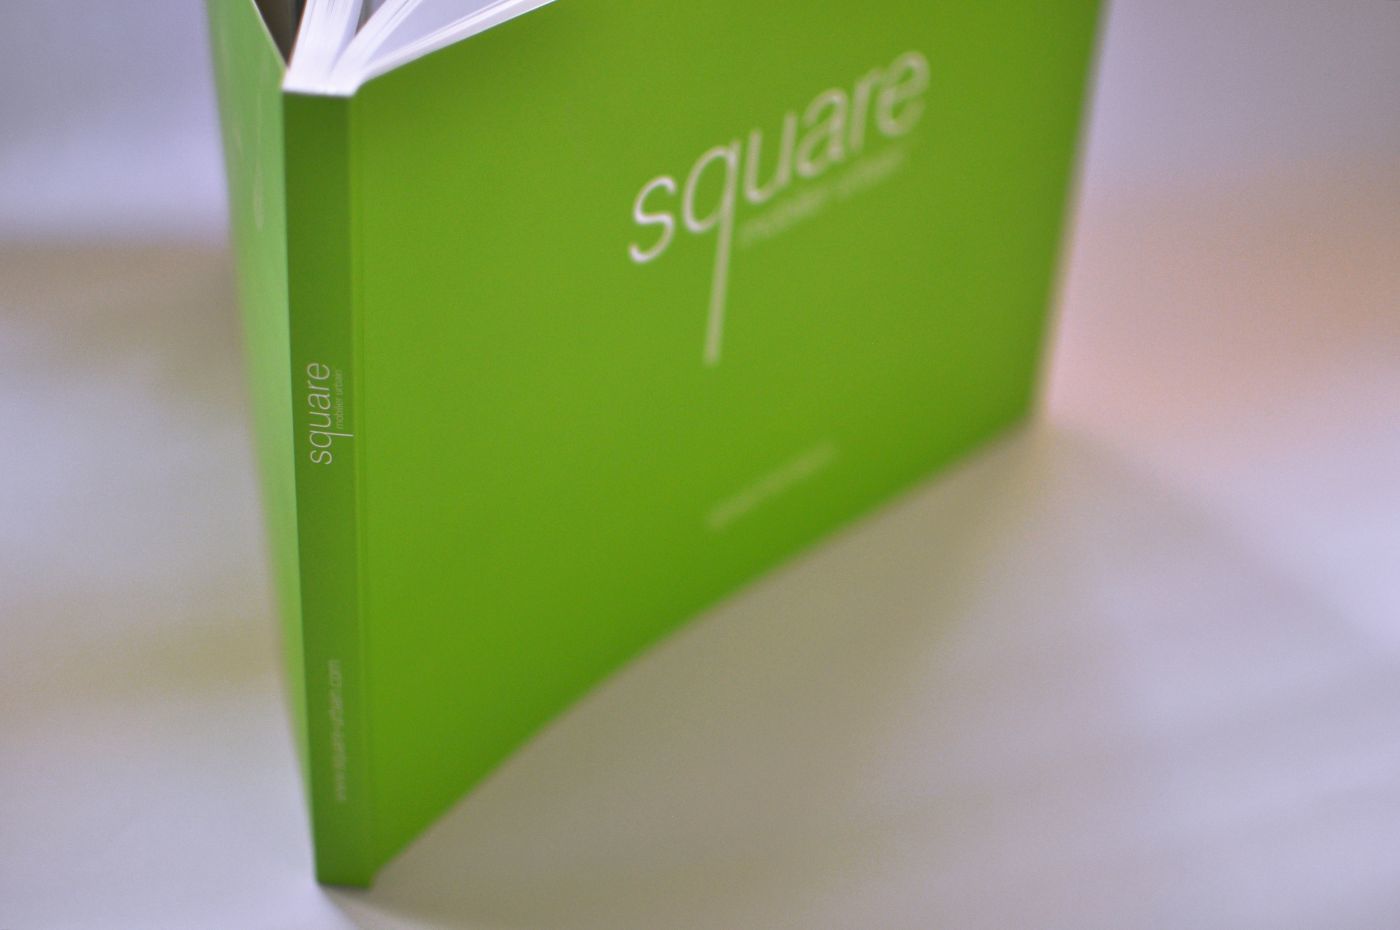 Square, stratégie de marque (photo 5)